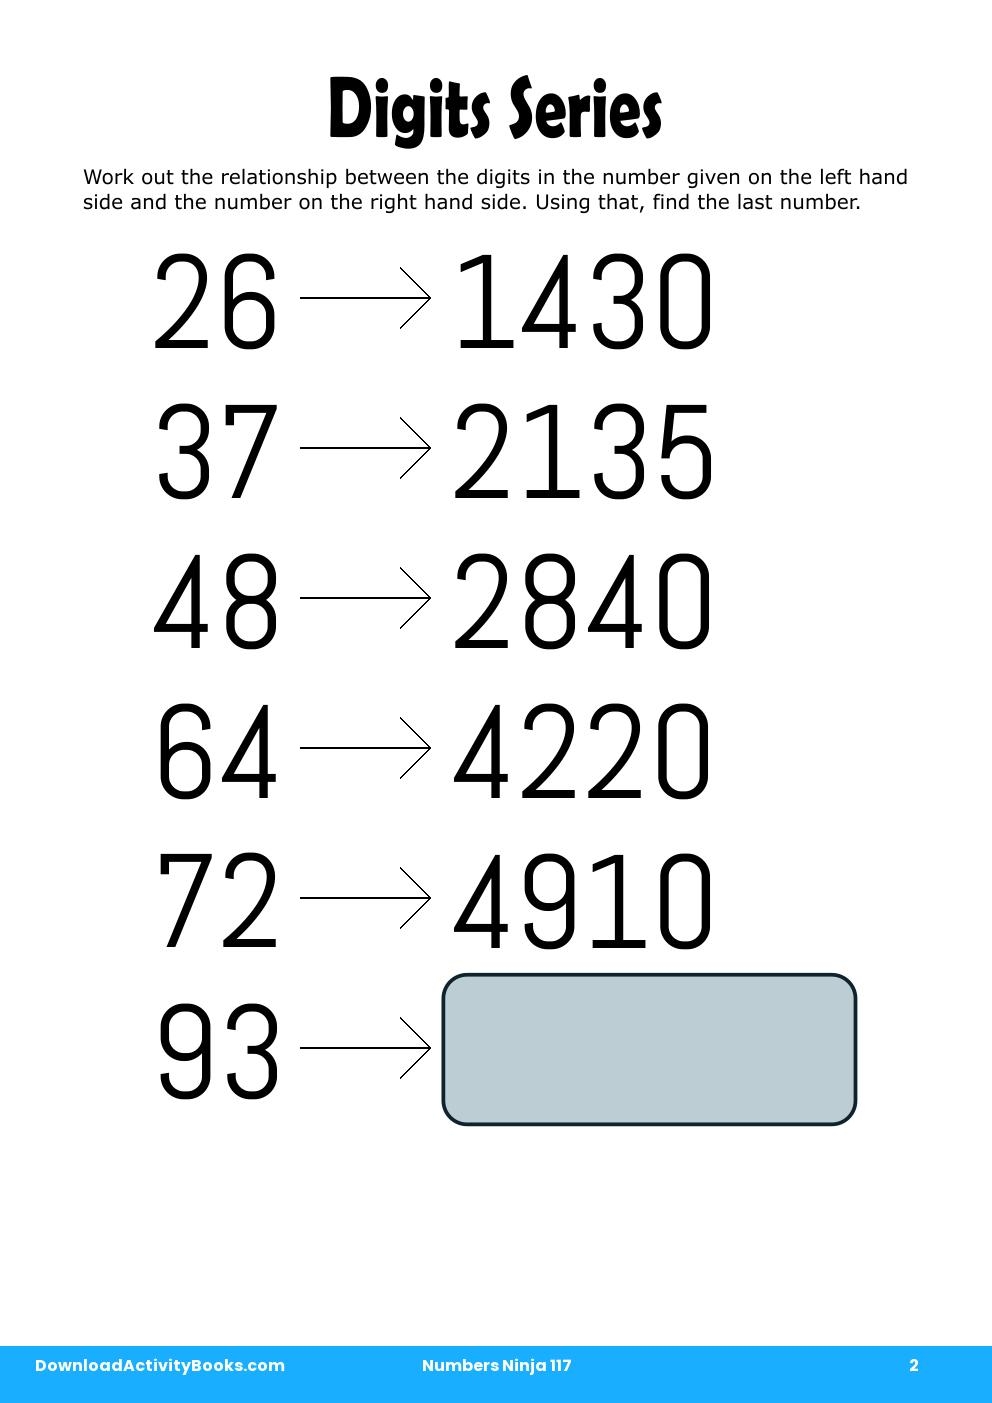 Digits Series in Numbers Ninja 117